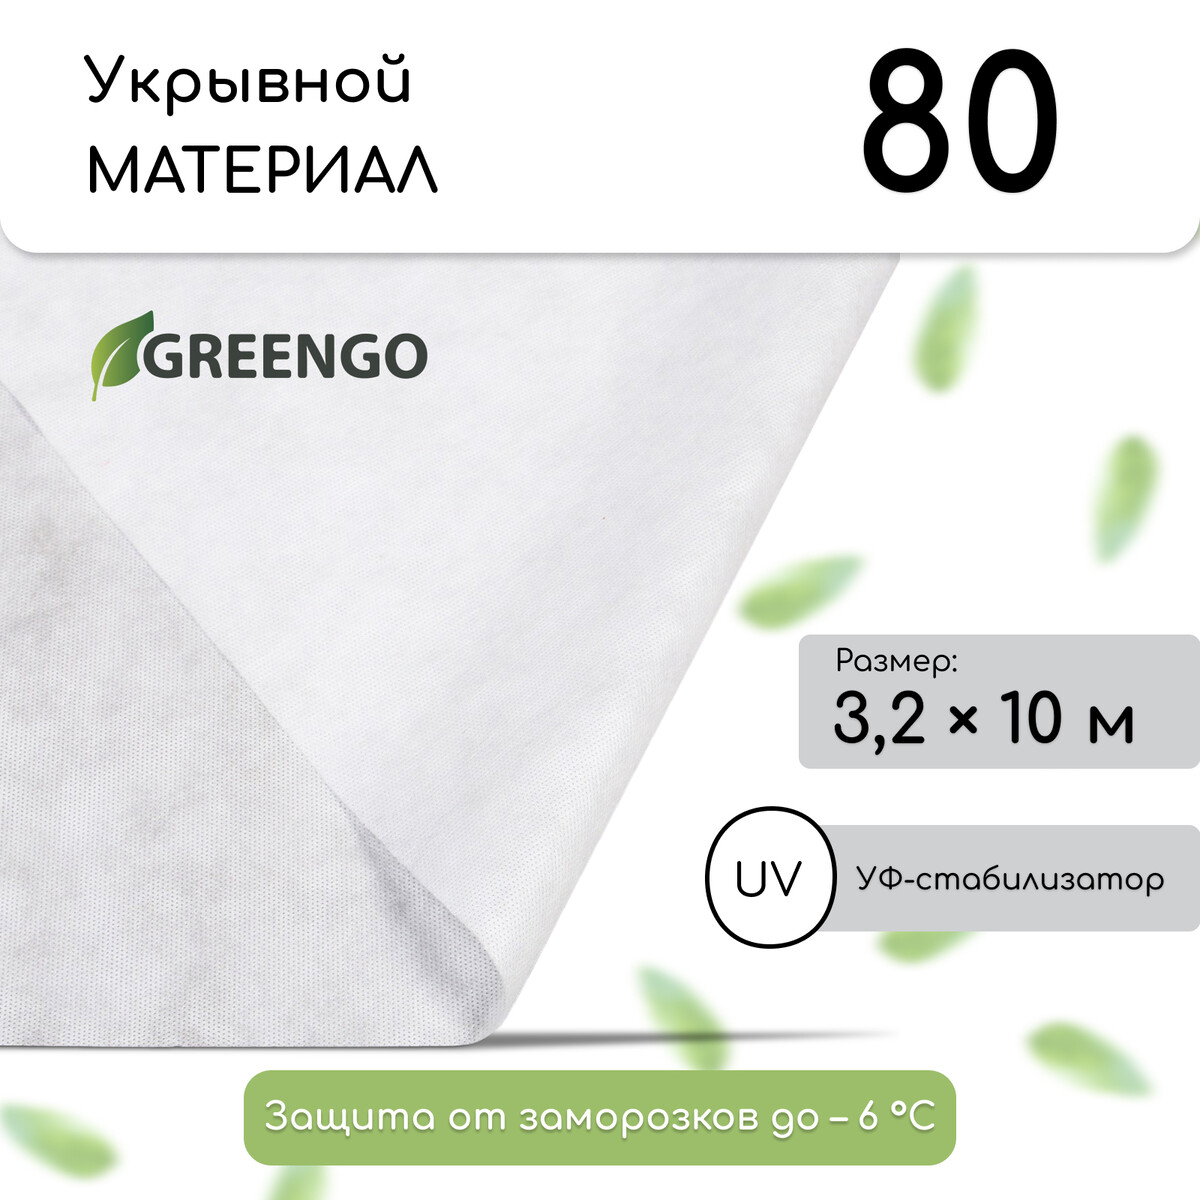 Материал укрывной, 10 × 3,2 м, плотность 80 г/м², спанбонд с уф-стабилизатором, белый, greengo, эконом 20%